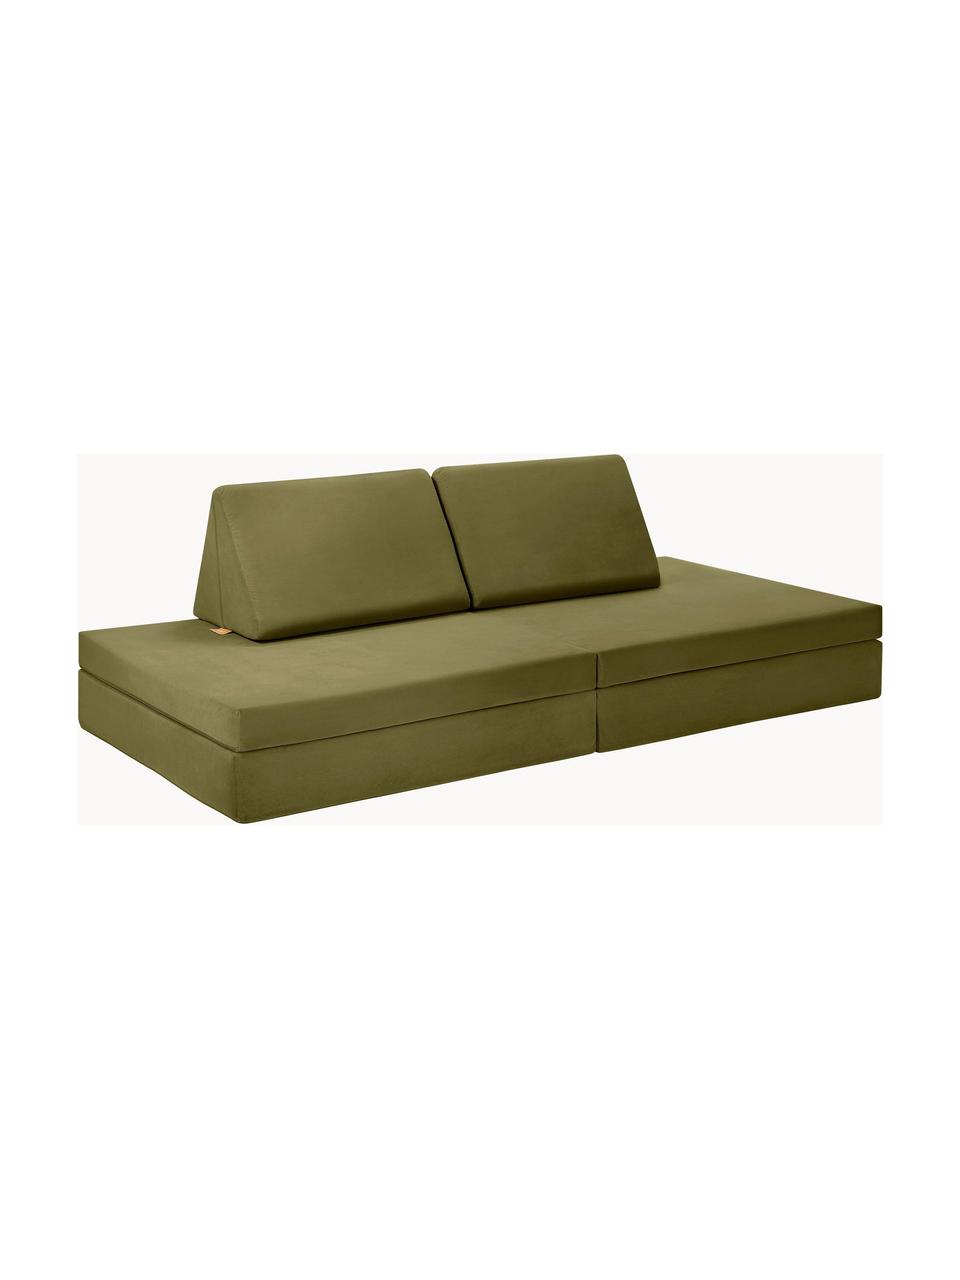 Ręcznie wykonana dziecięca sofa modułowa z aksamitu Mila, Tapicerka: aksamit (100% poliester), Oliwkowy zielony aksamit, S 168 x G 84 cm